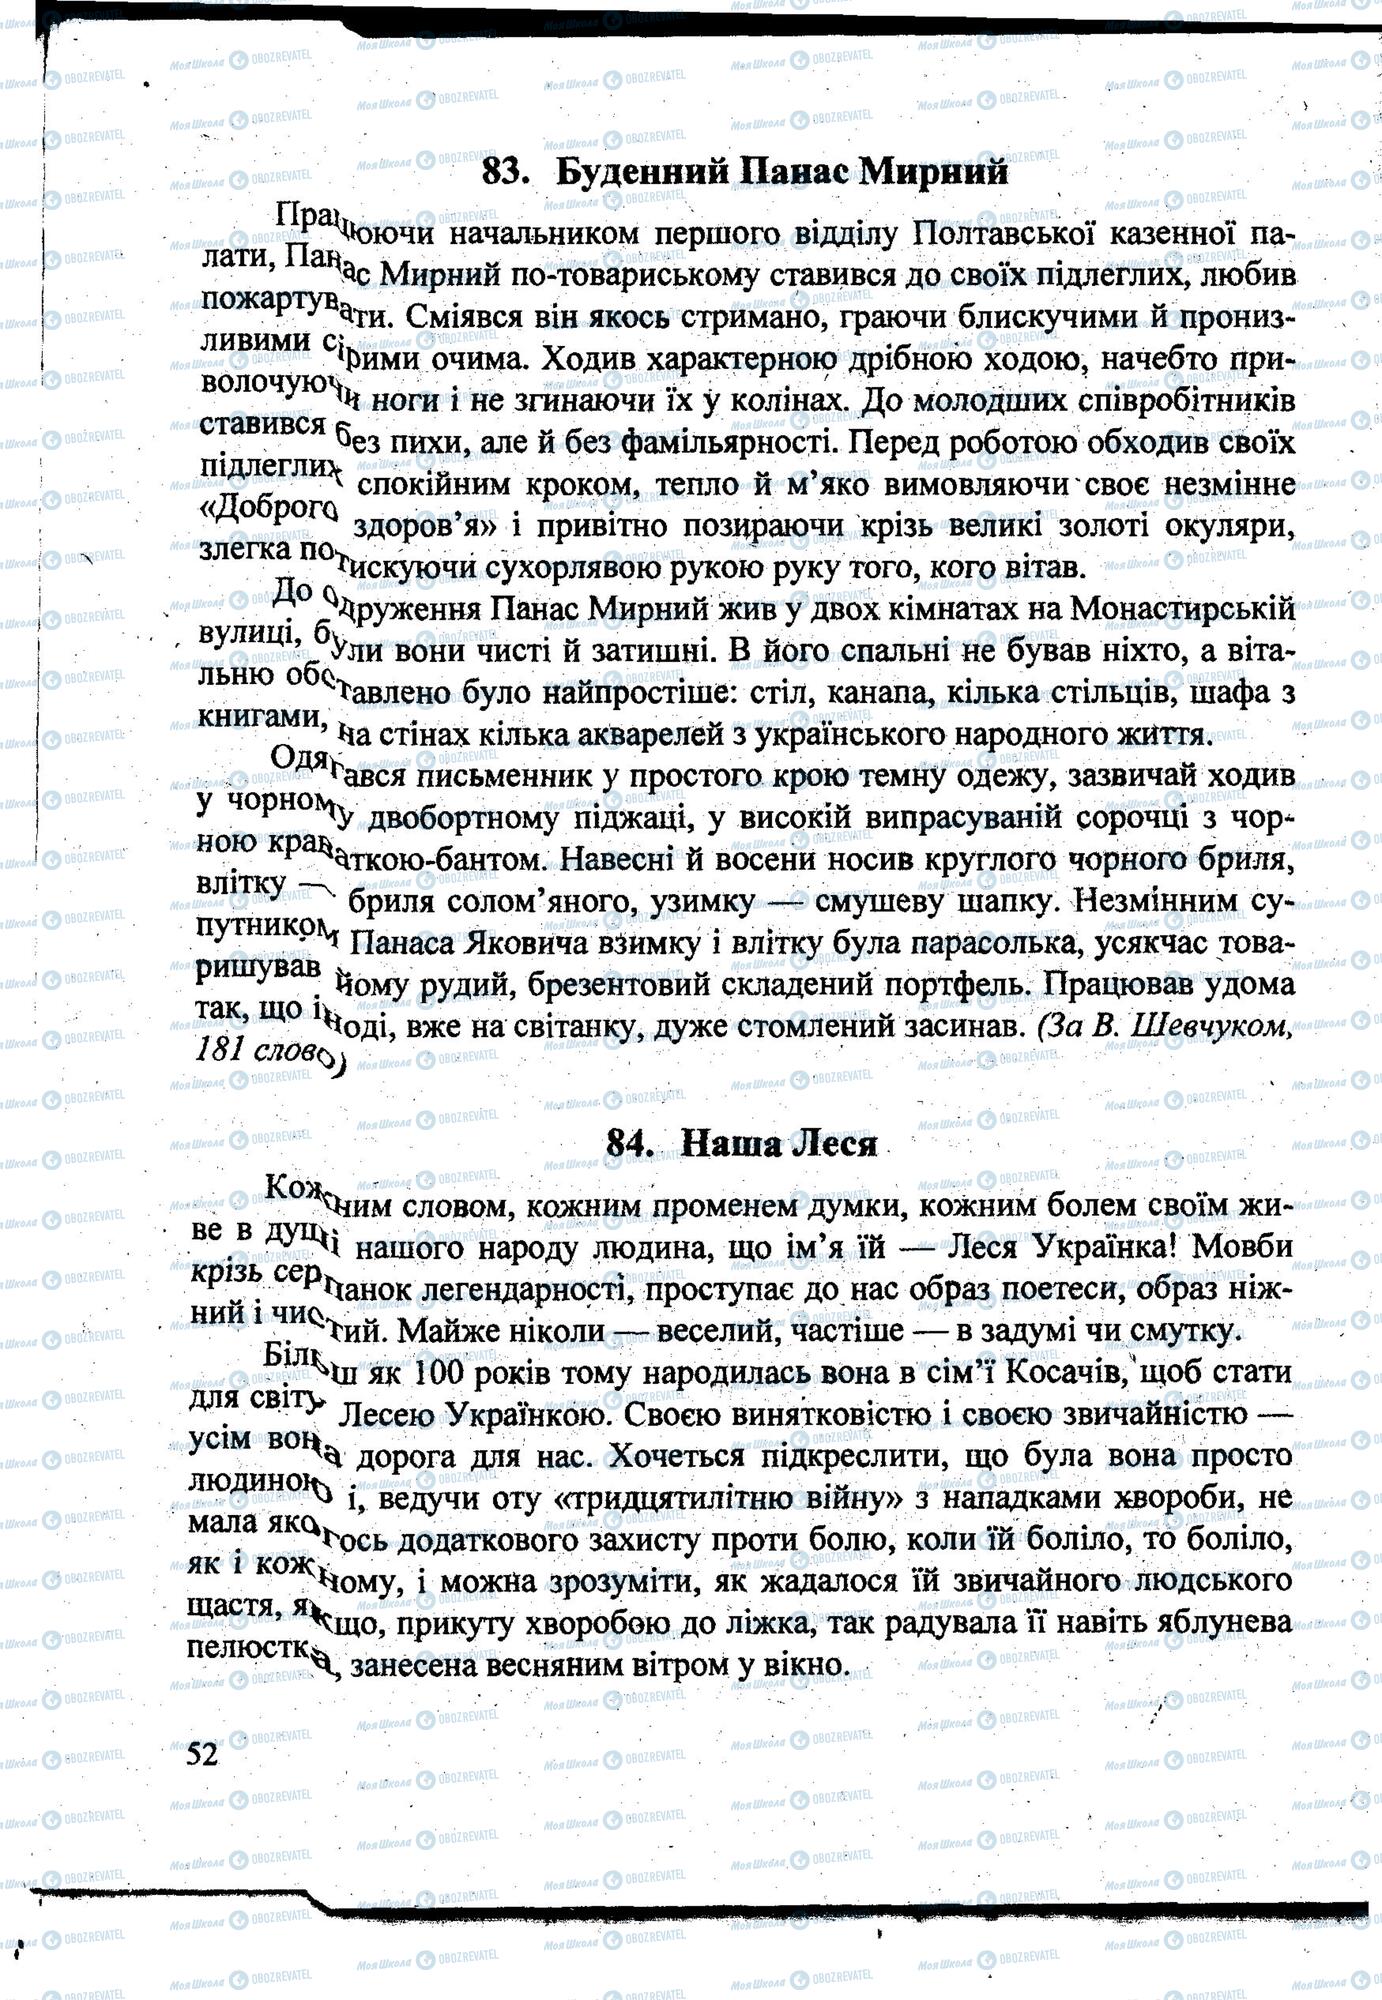 ДПА Укр мова 9 класс страница 0051